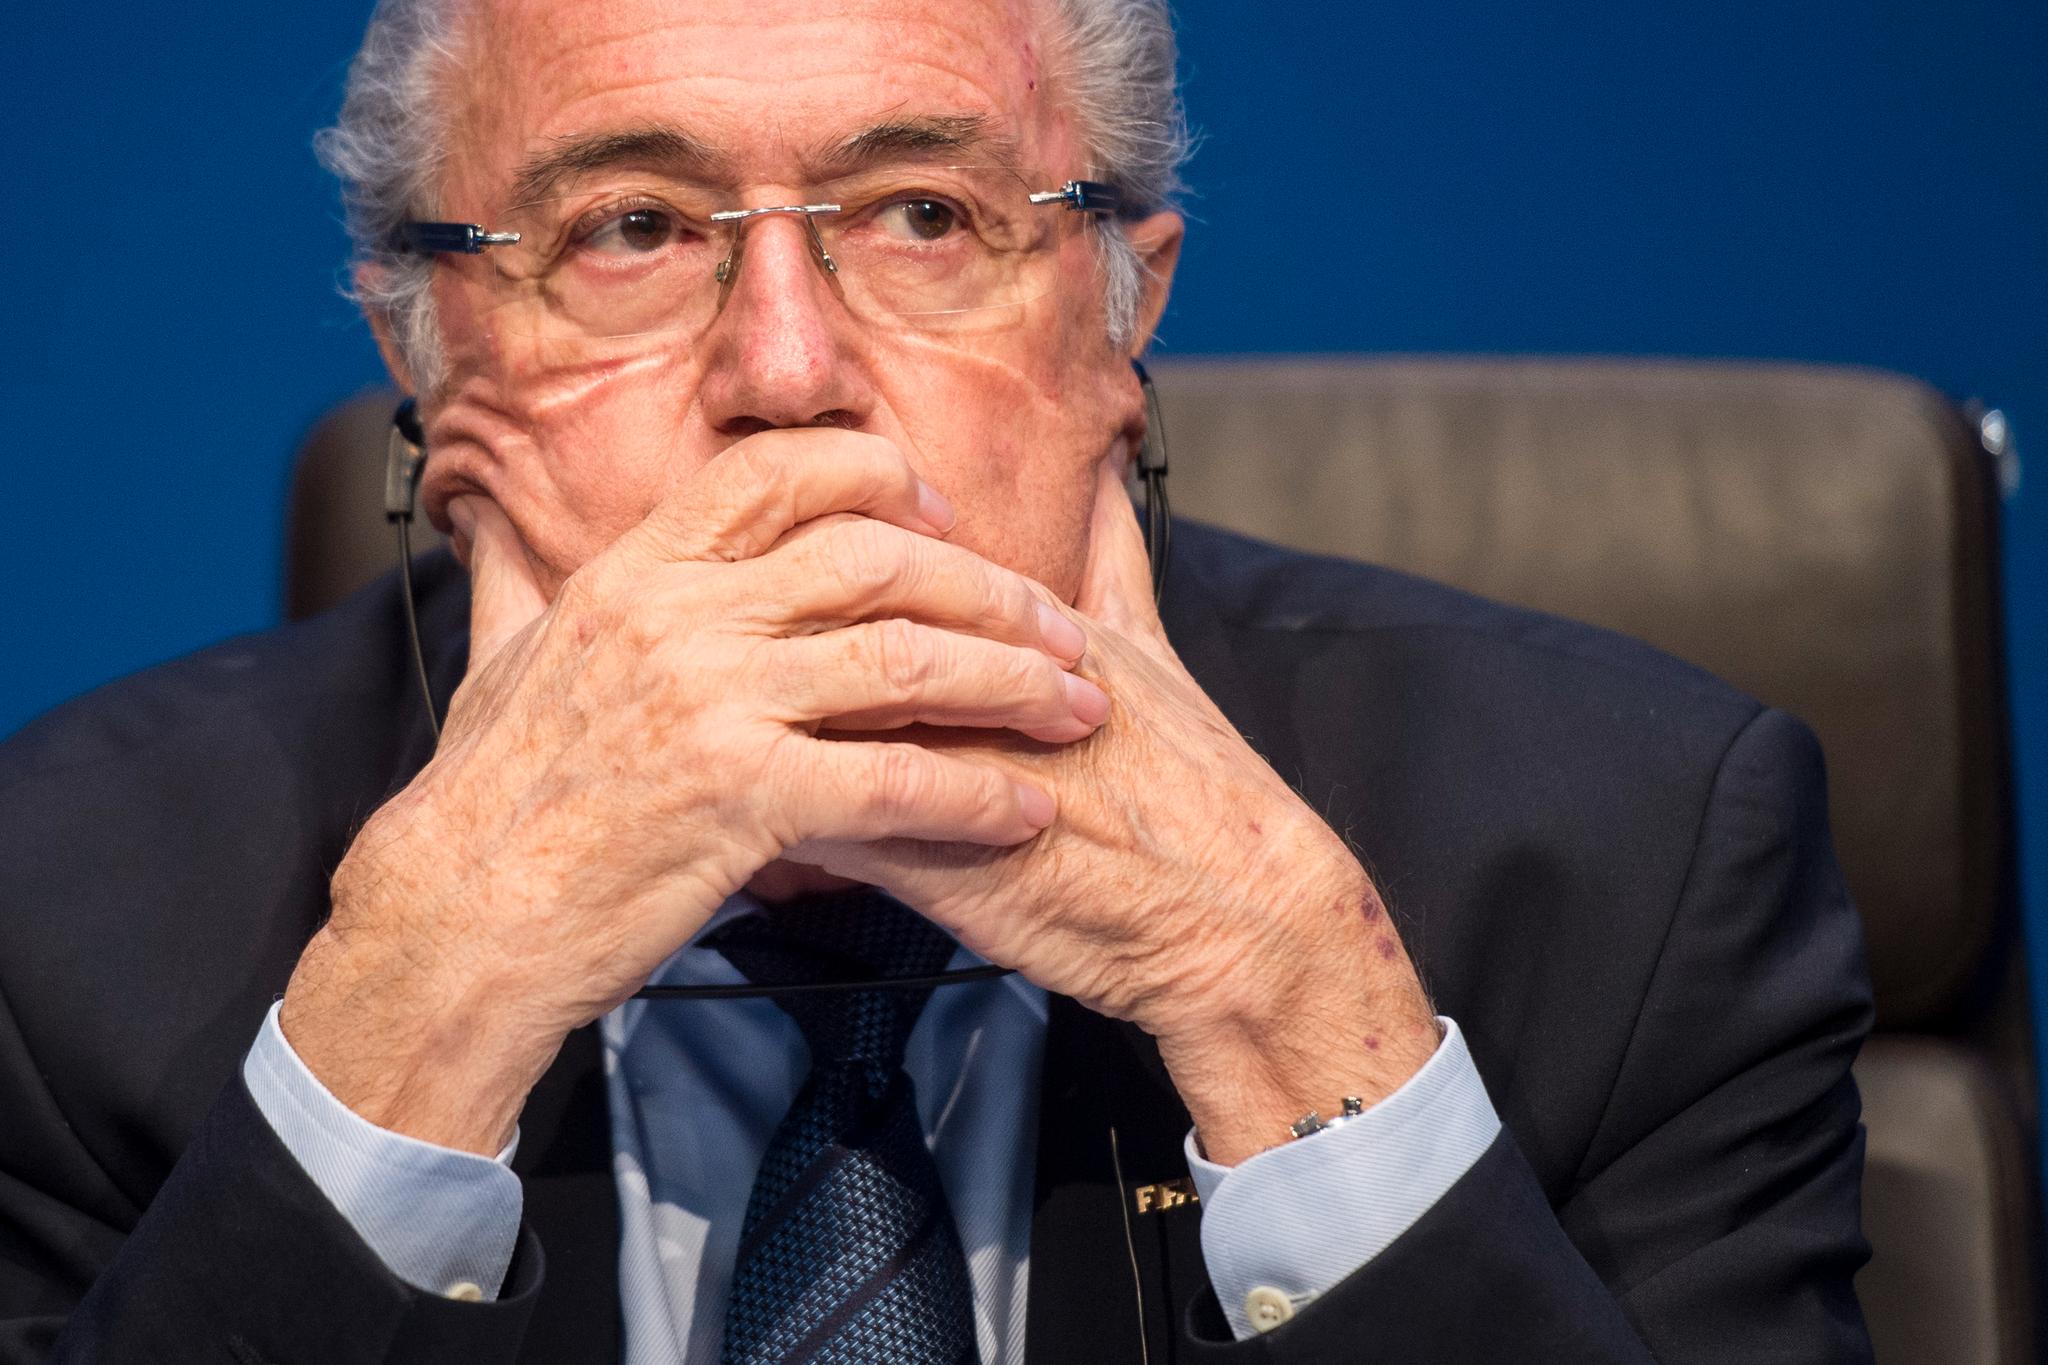 I kjent stil avfeide Sepp Blatter alle kritiske spørsmål på en pressekonferanse etter valgseieren.